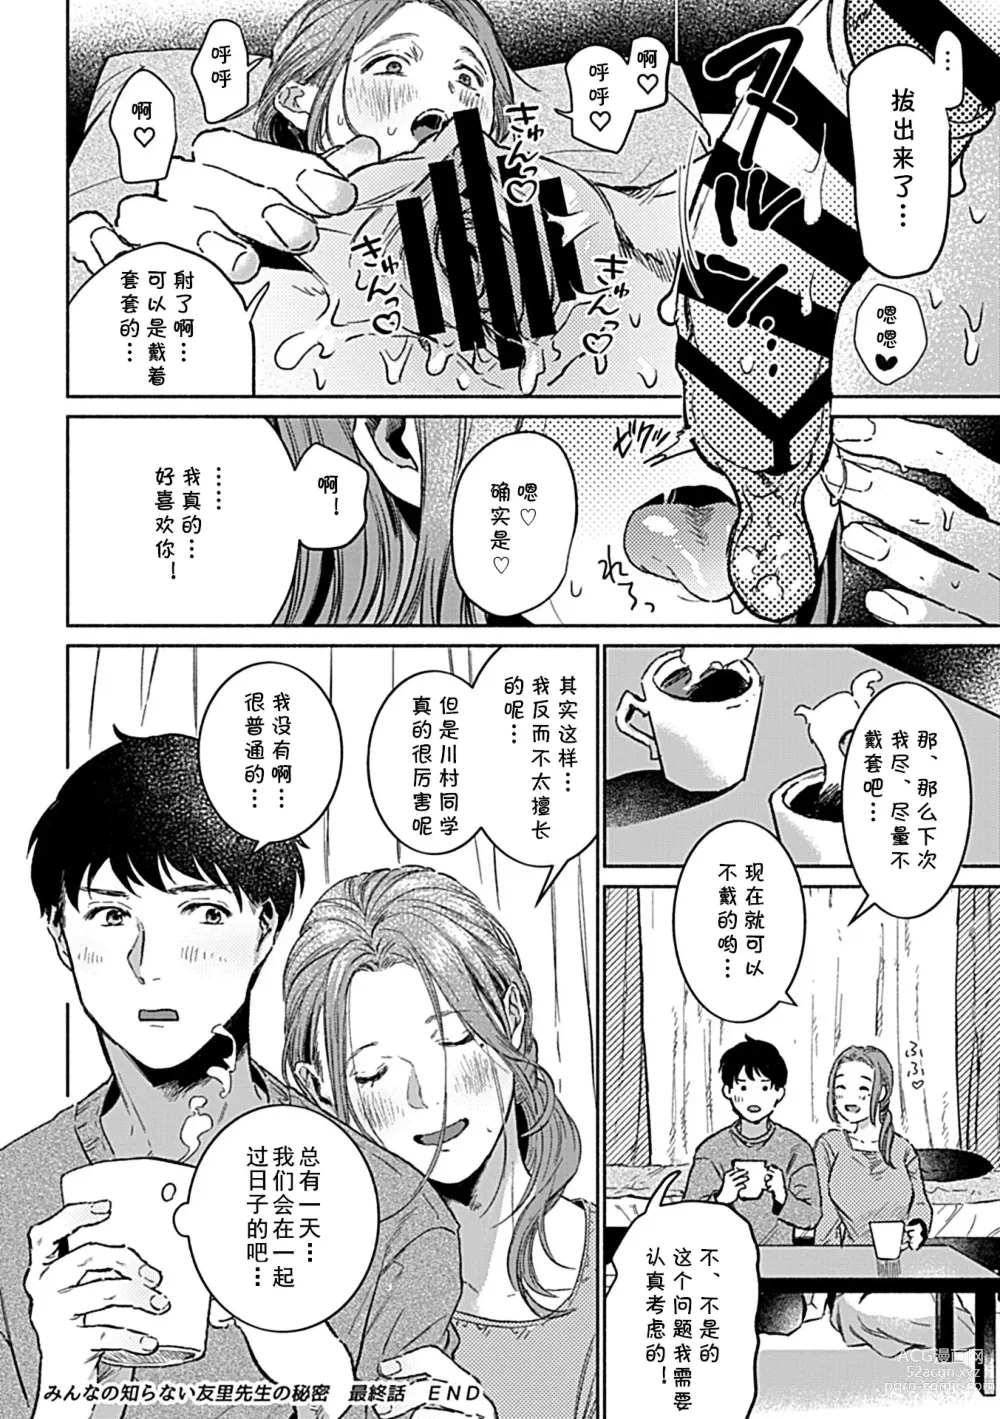 Page 86 of manga Minna no Shiranai Yuri Sensei no Himitsu